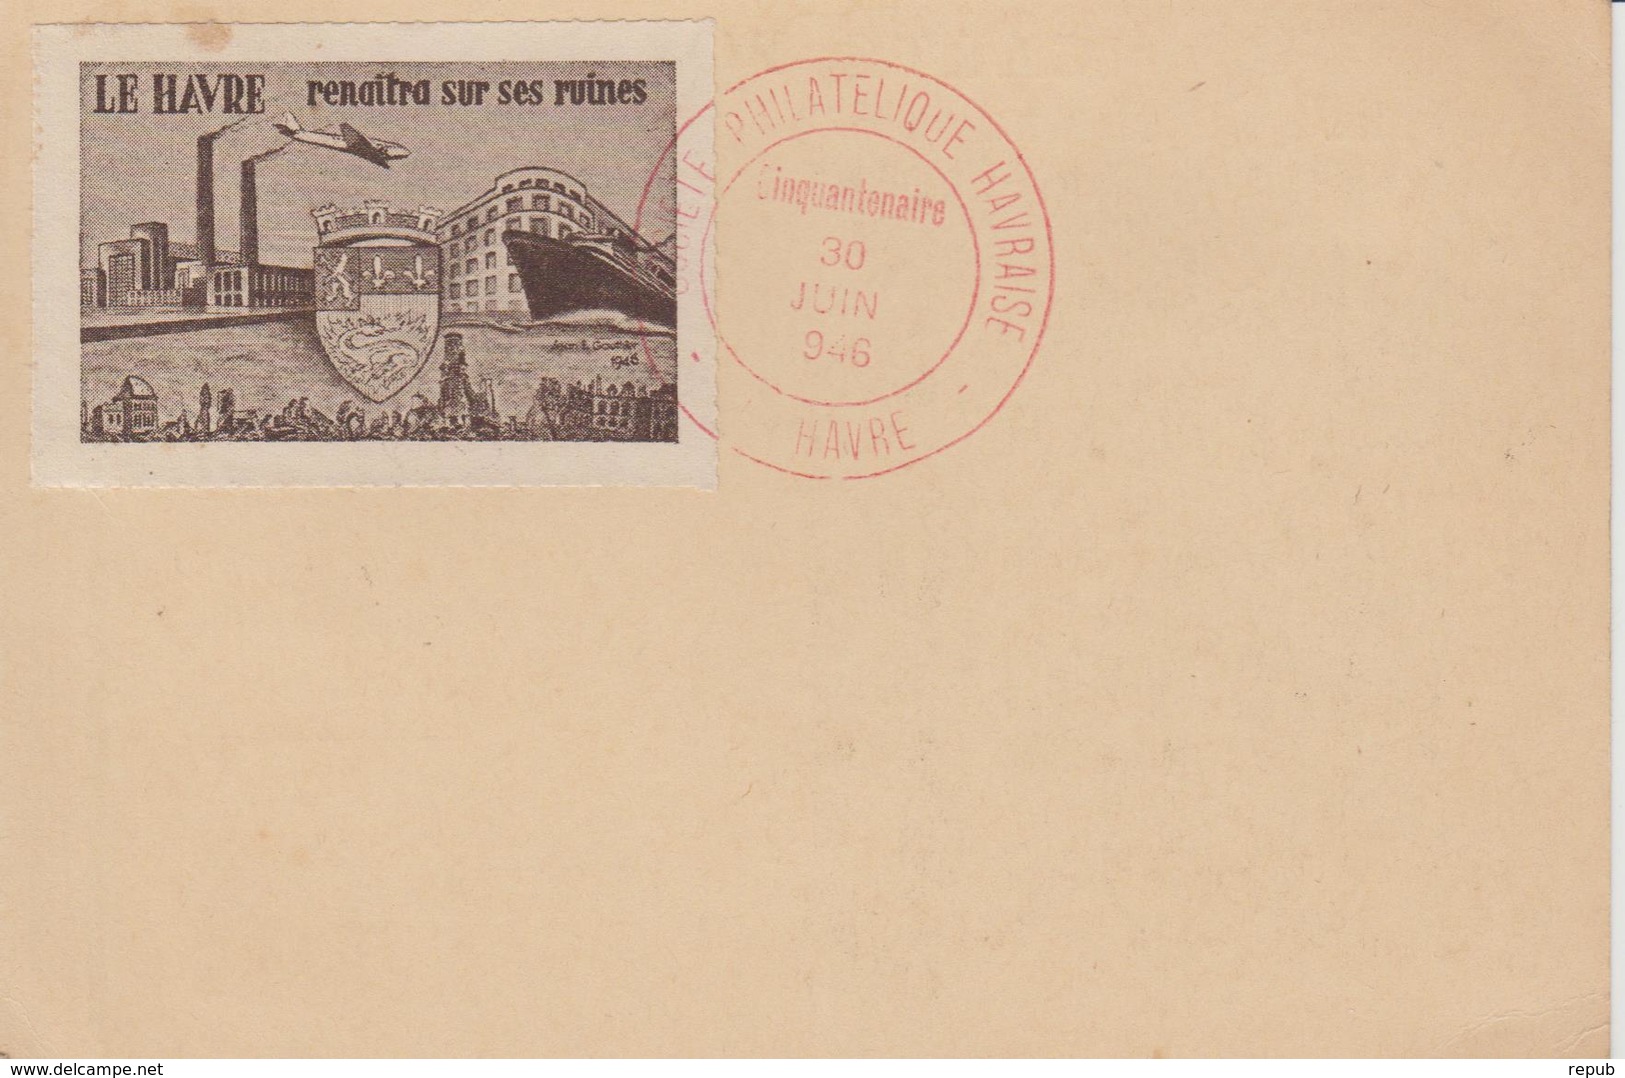 Le Havre Journée Du Timbre 1946 Avec Vignette Au Verso - Briefmarkenmessen